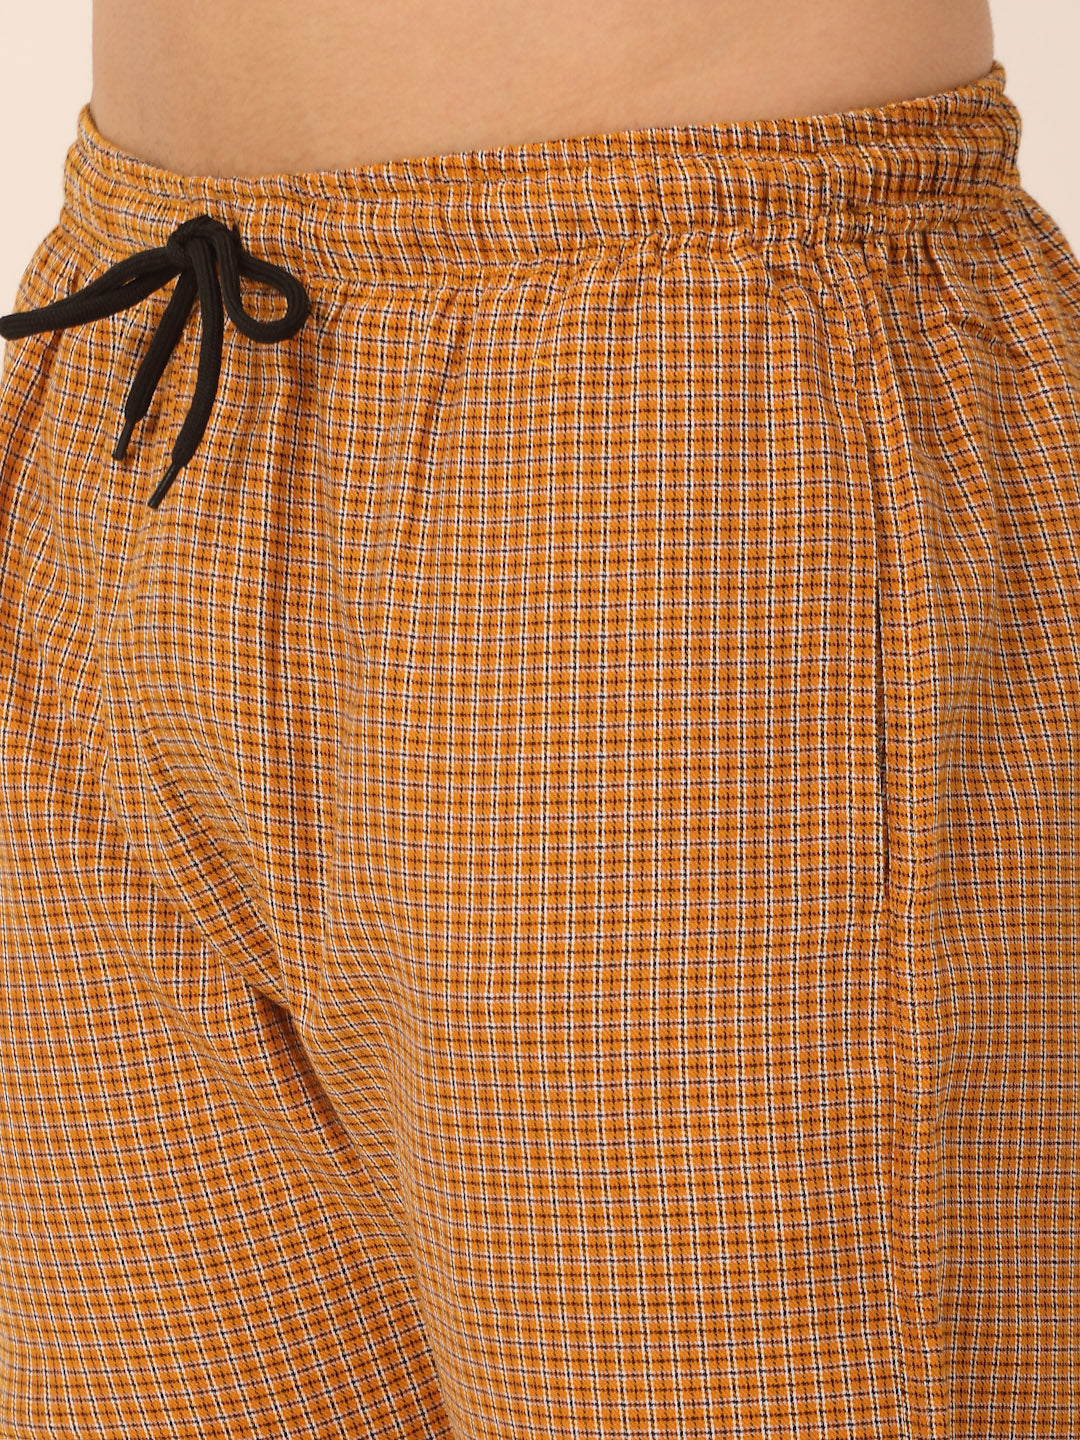 Jainish Men's Checked Cotton Track Pants - Mustard - Distacart